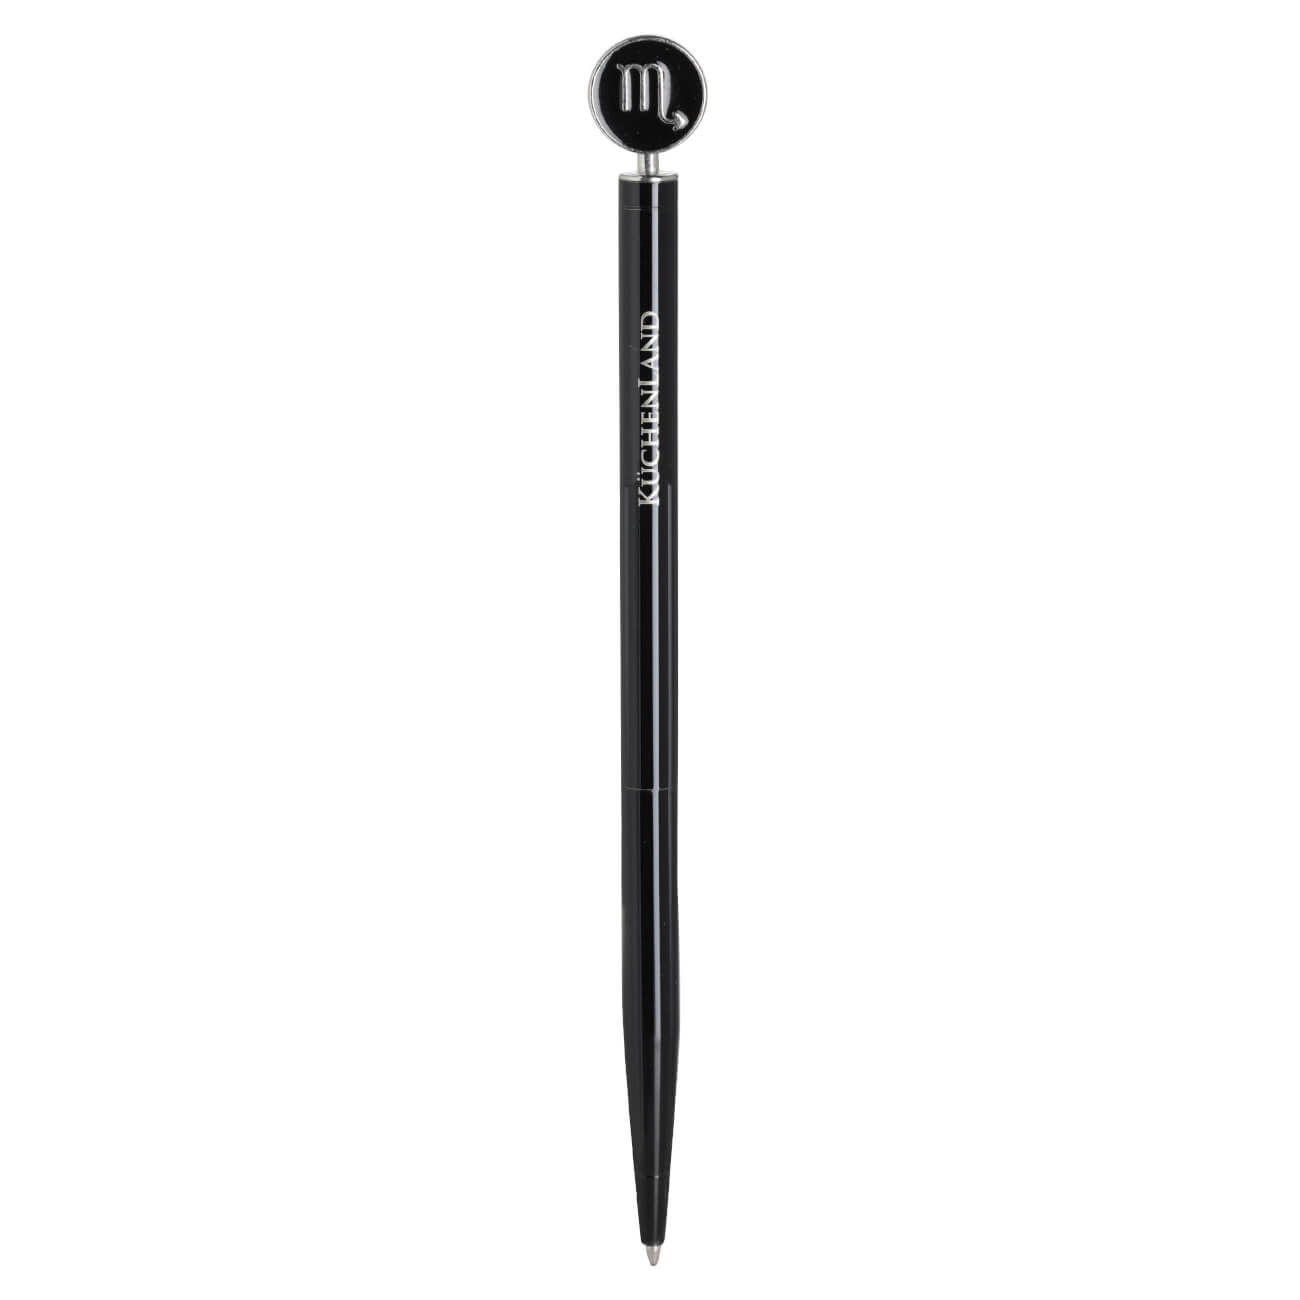 Ручка шариковая, 15 см, с фигуркой, сталь, черно-серебристая, Скорпион, Zodiac brass ballpoint ручка